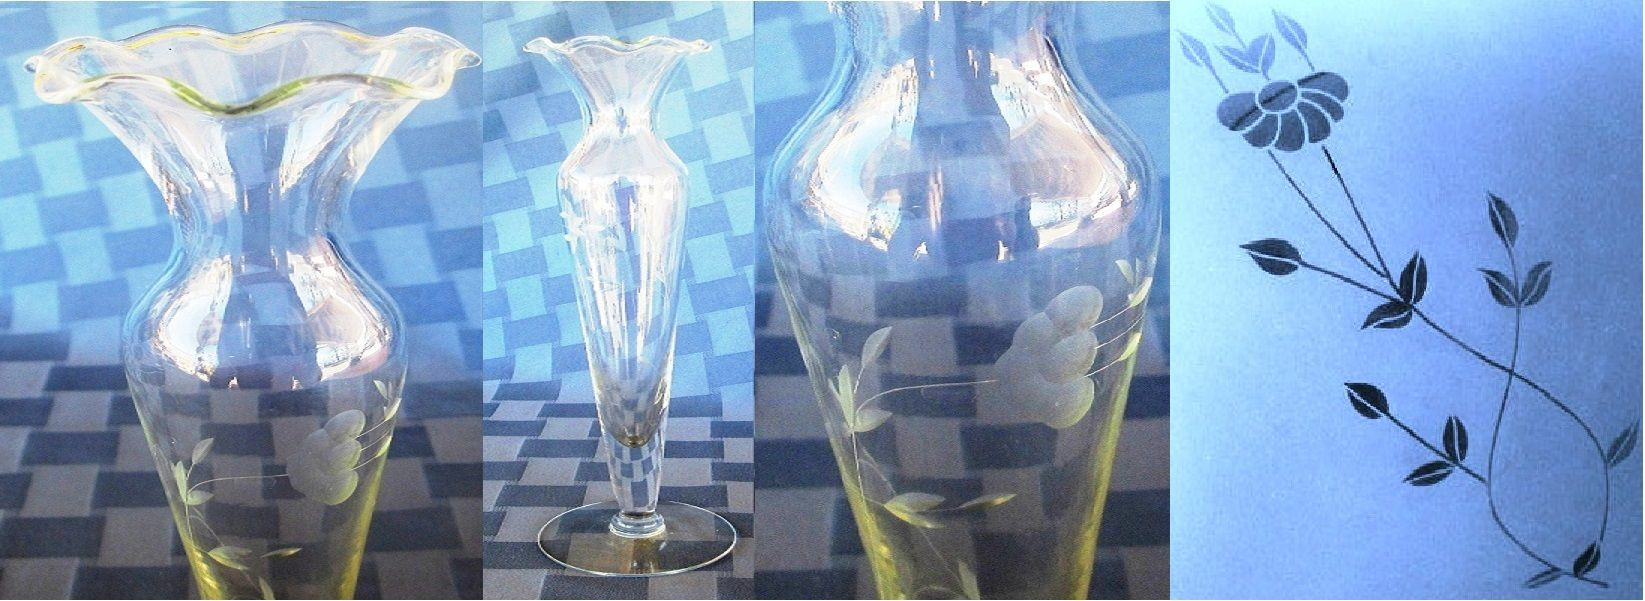 13 Spectacular Crystal Clear Vase 2024 free download crystal clear vase of elegante florerito larguirucho de princess house 10 de alto en pertaining to elegante florerito larguirucho de princess house 10 de alto en el delicado